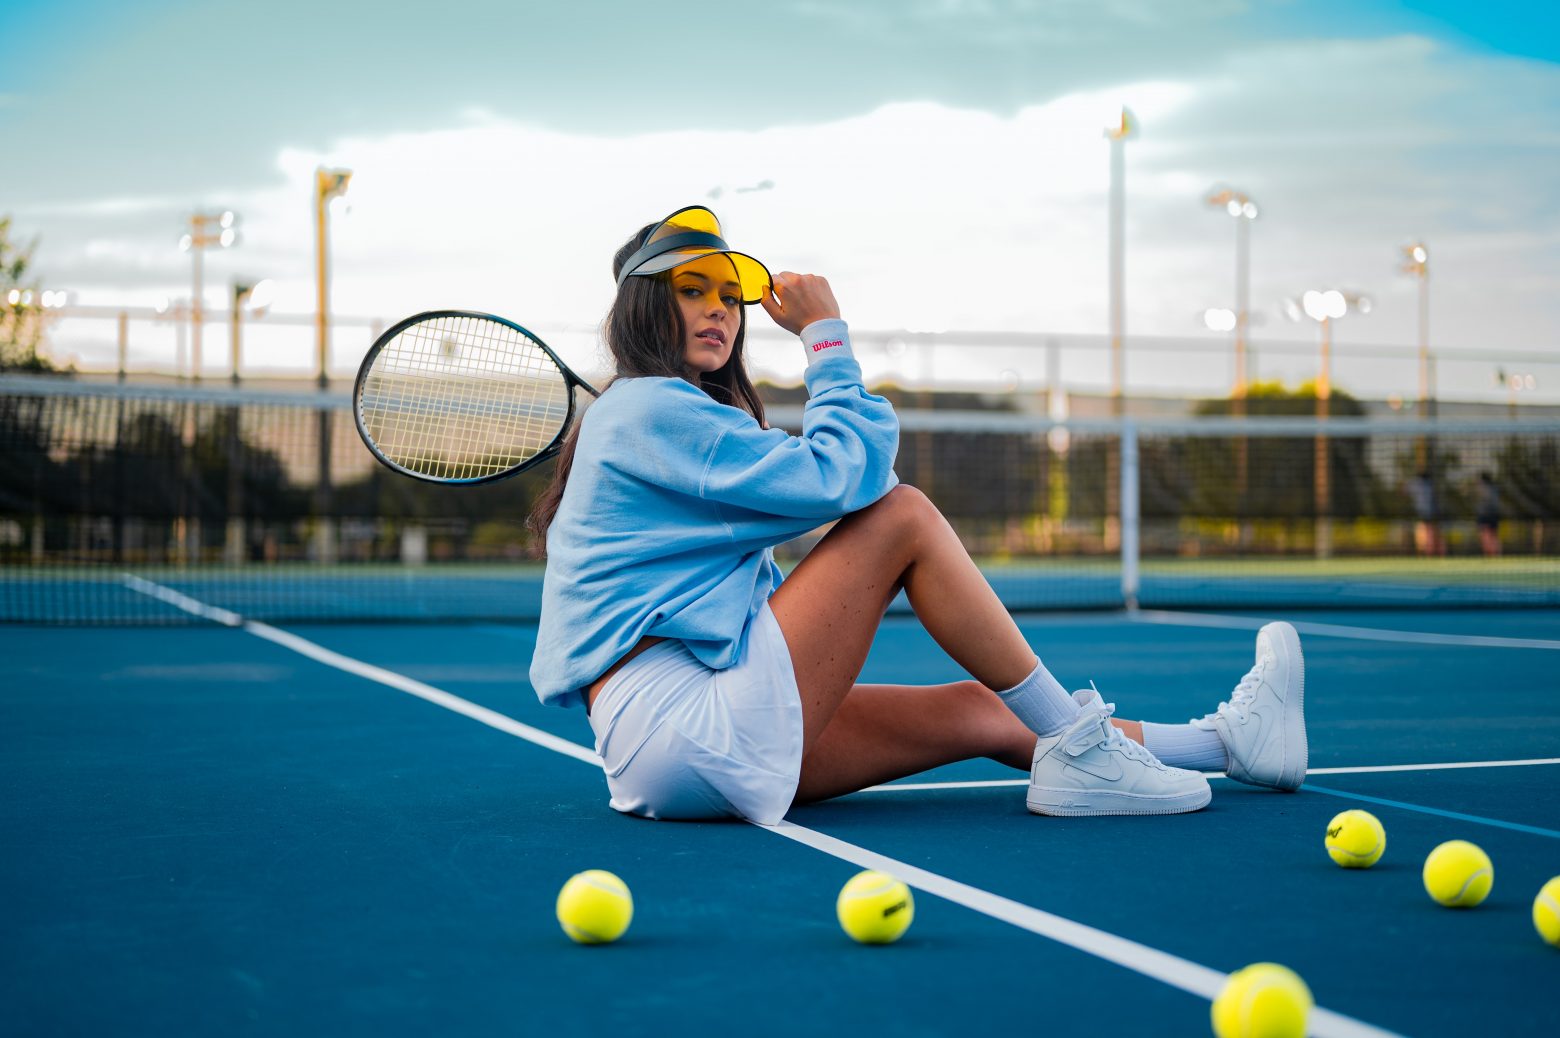 Køb dit tennistøj online og få det billigere